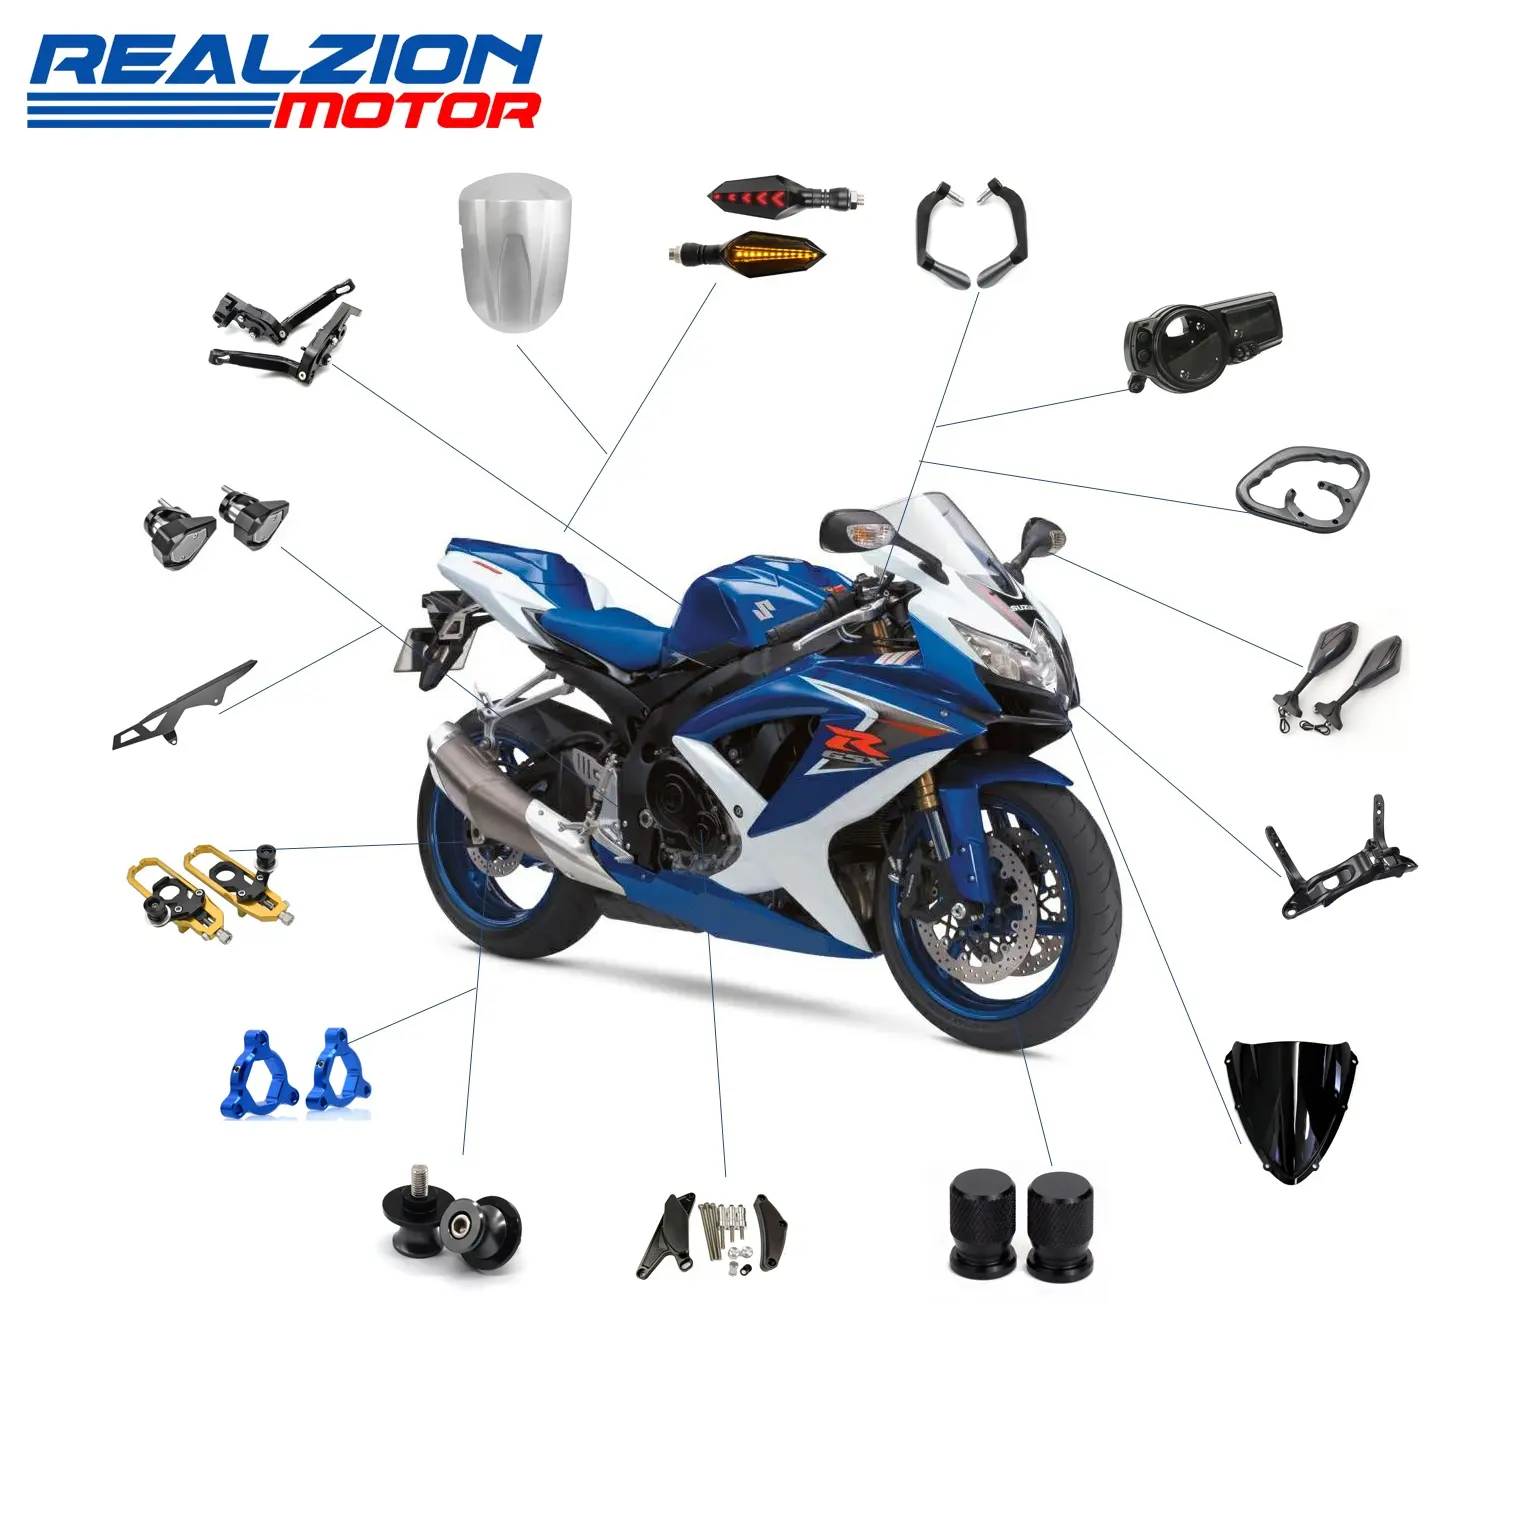 Оптовая продажа, аксессуары для мотоциклов Realzion, модифицированные системы для мотоциклов, запчасти для Suzuki